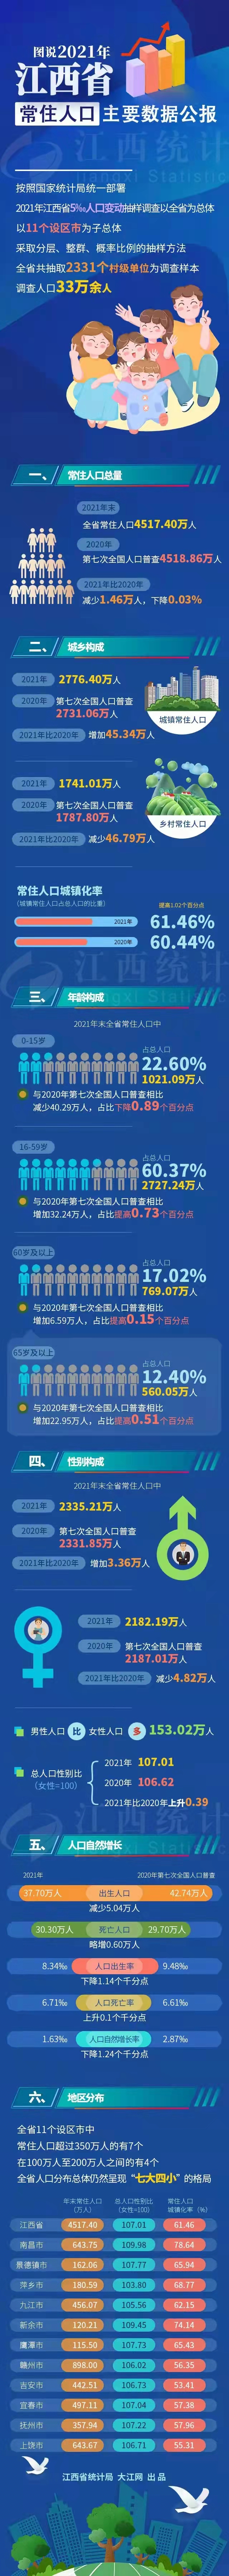 宜春市人口_重磅!2021年江西省常住人口主要数据公报|宜春市人民zf